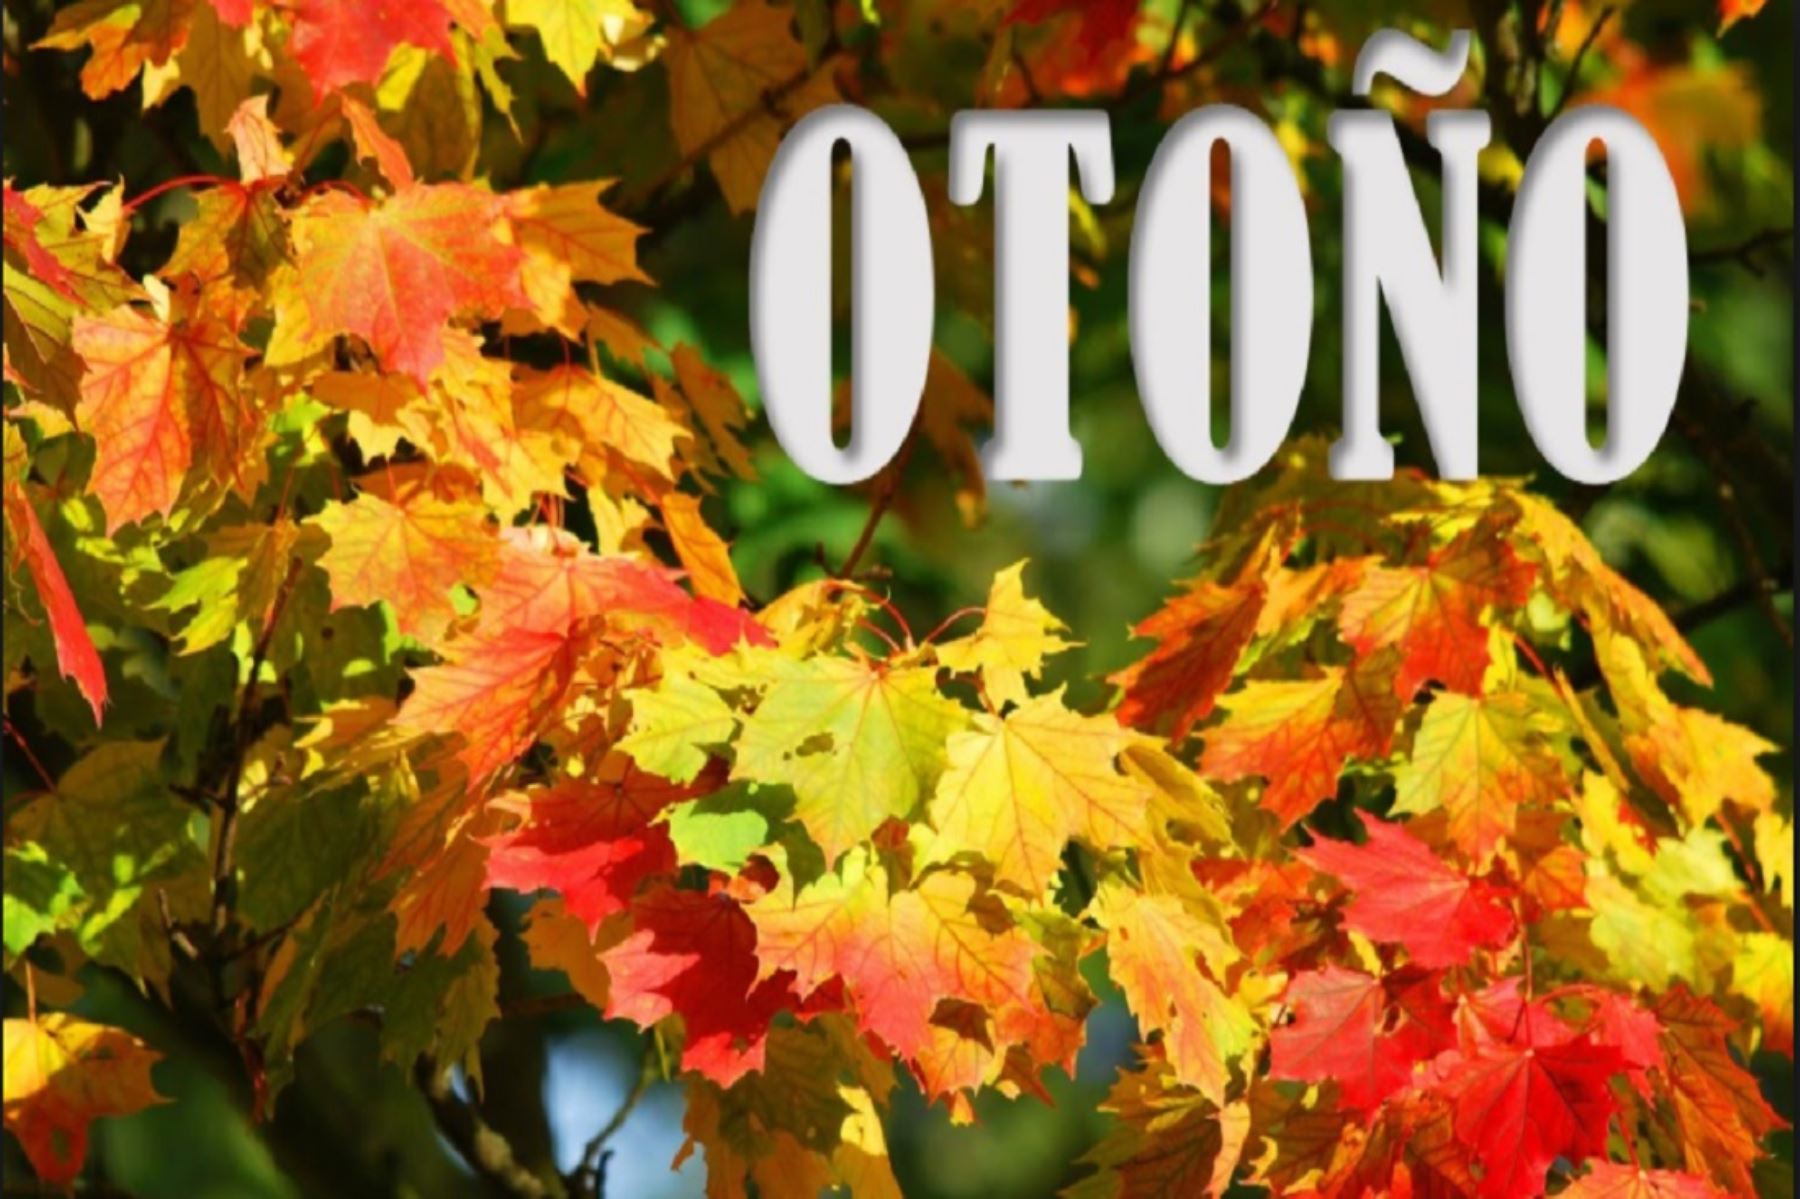 La estación del otoño se inicia hoy martes 20 de marzo a las 11:15 horas.